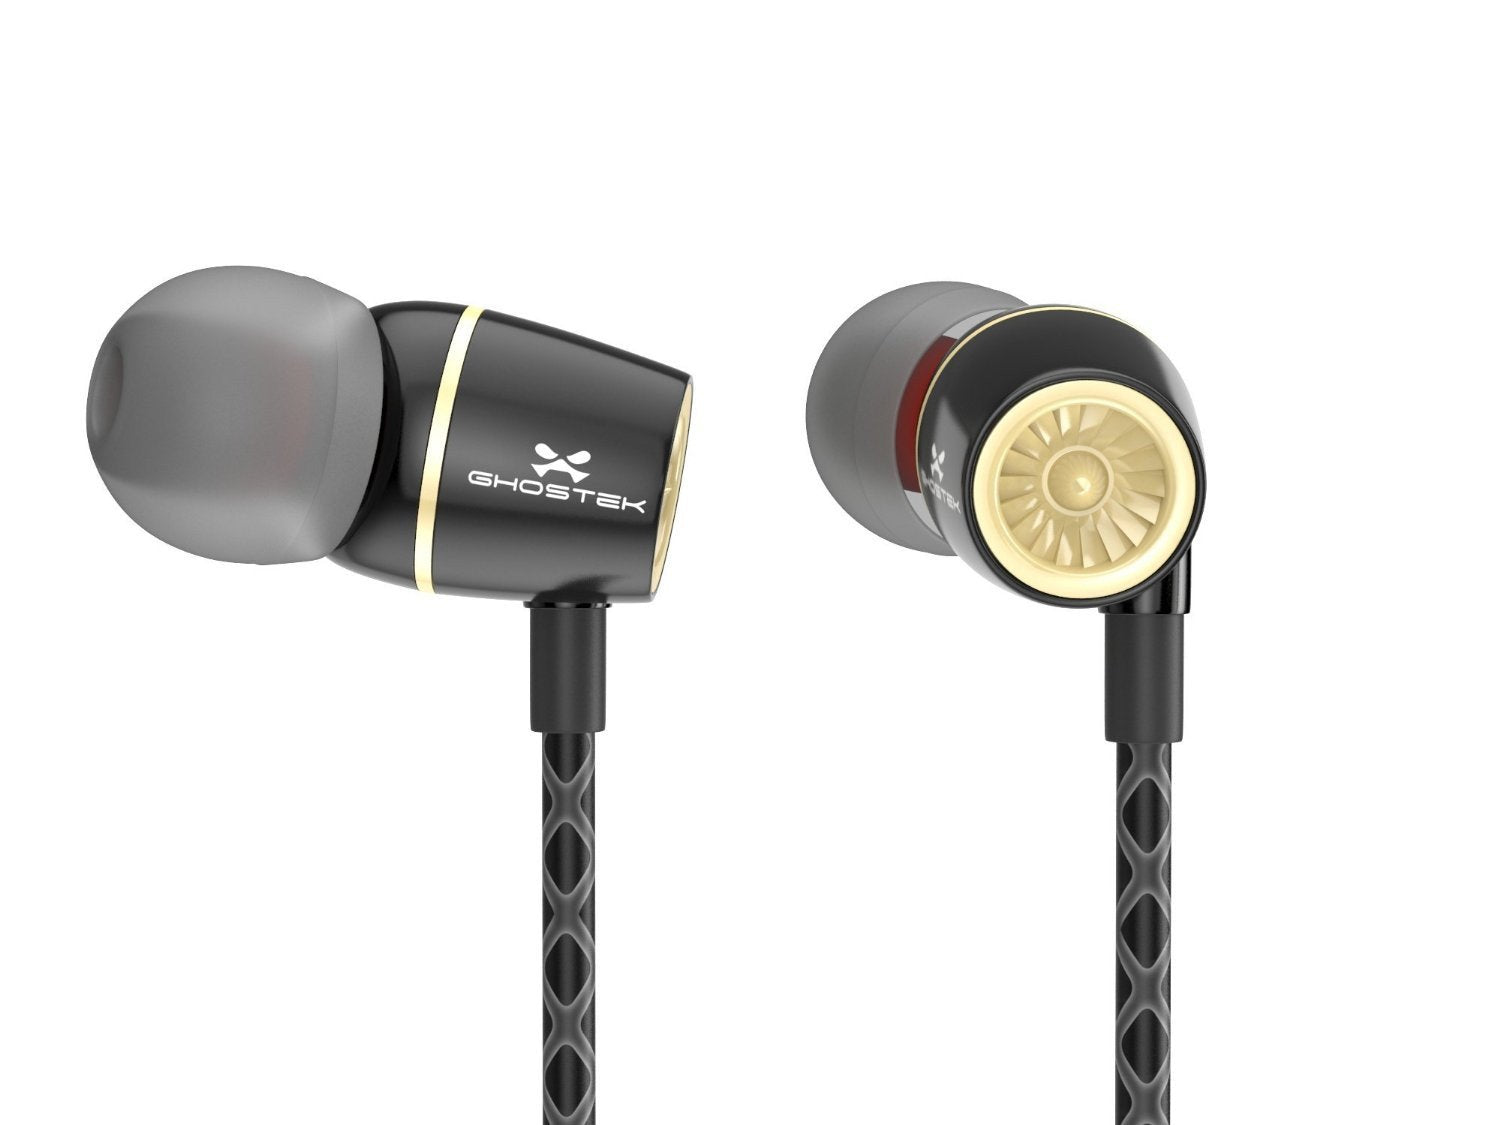 Wired 3.5MM Headphones Earphones, Ghostek Turbine Black Series Wired Earbuds | Built-In Microphone - PunkCase NZ